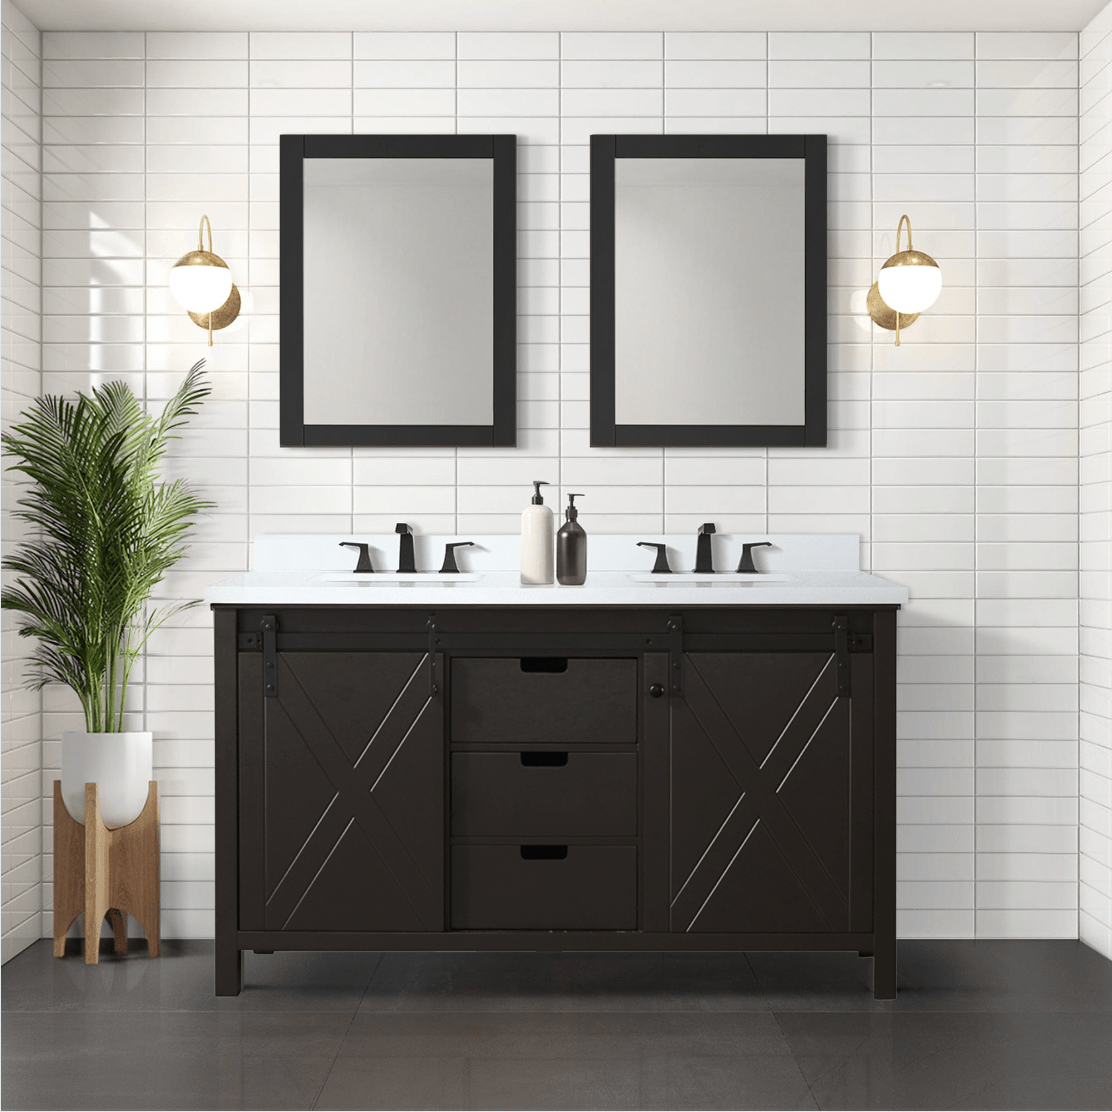 Bell + Modern Bathroom Vanity Brown / No Countertop / No Mirror Ketchum 60" x 22" Double Bath Vanity